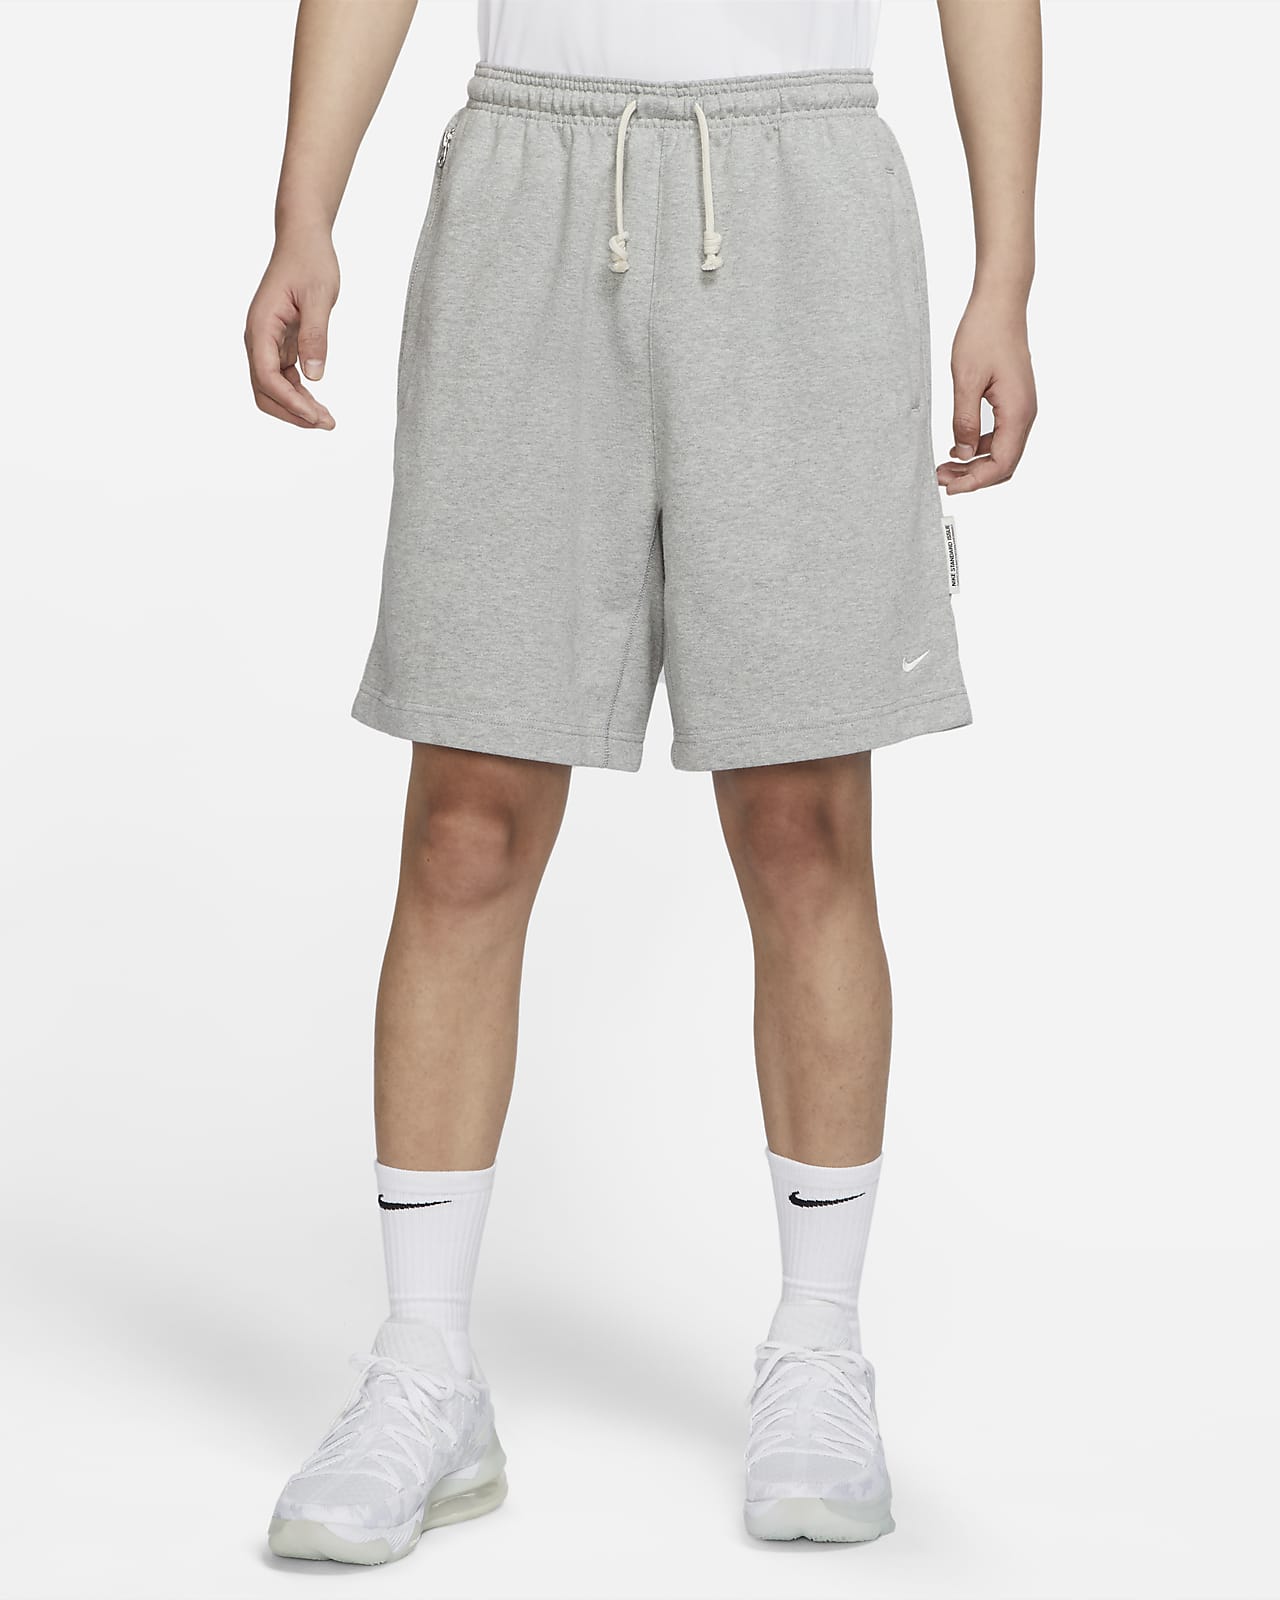 Nike Dri-FIT Standard Issue 男子速干法式毛圈篮球短裤